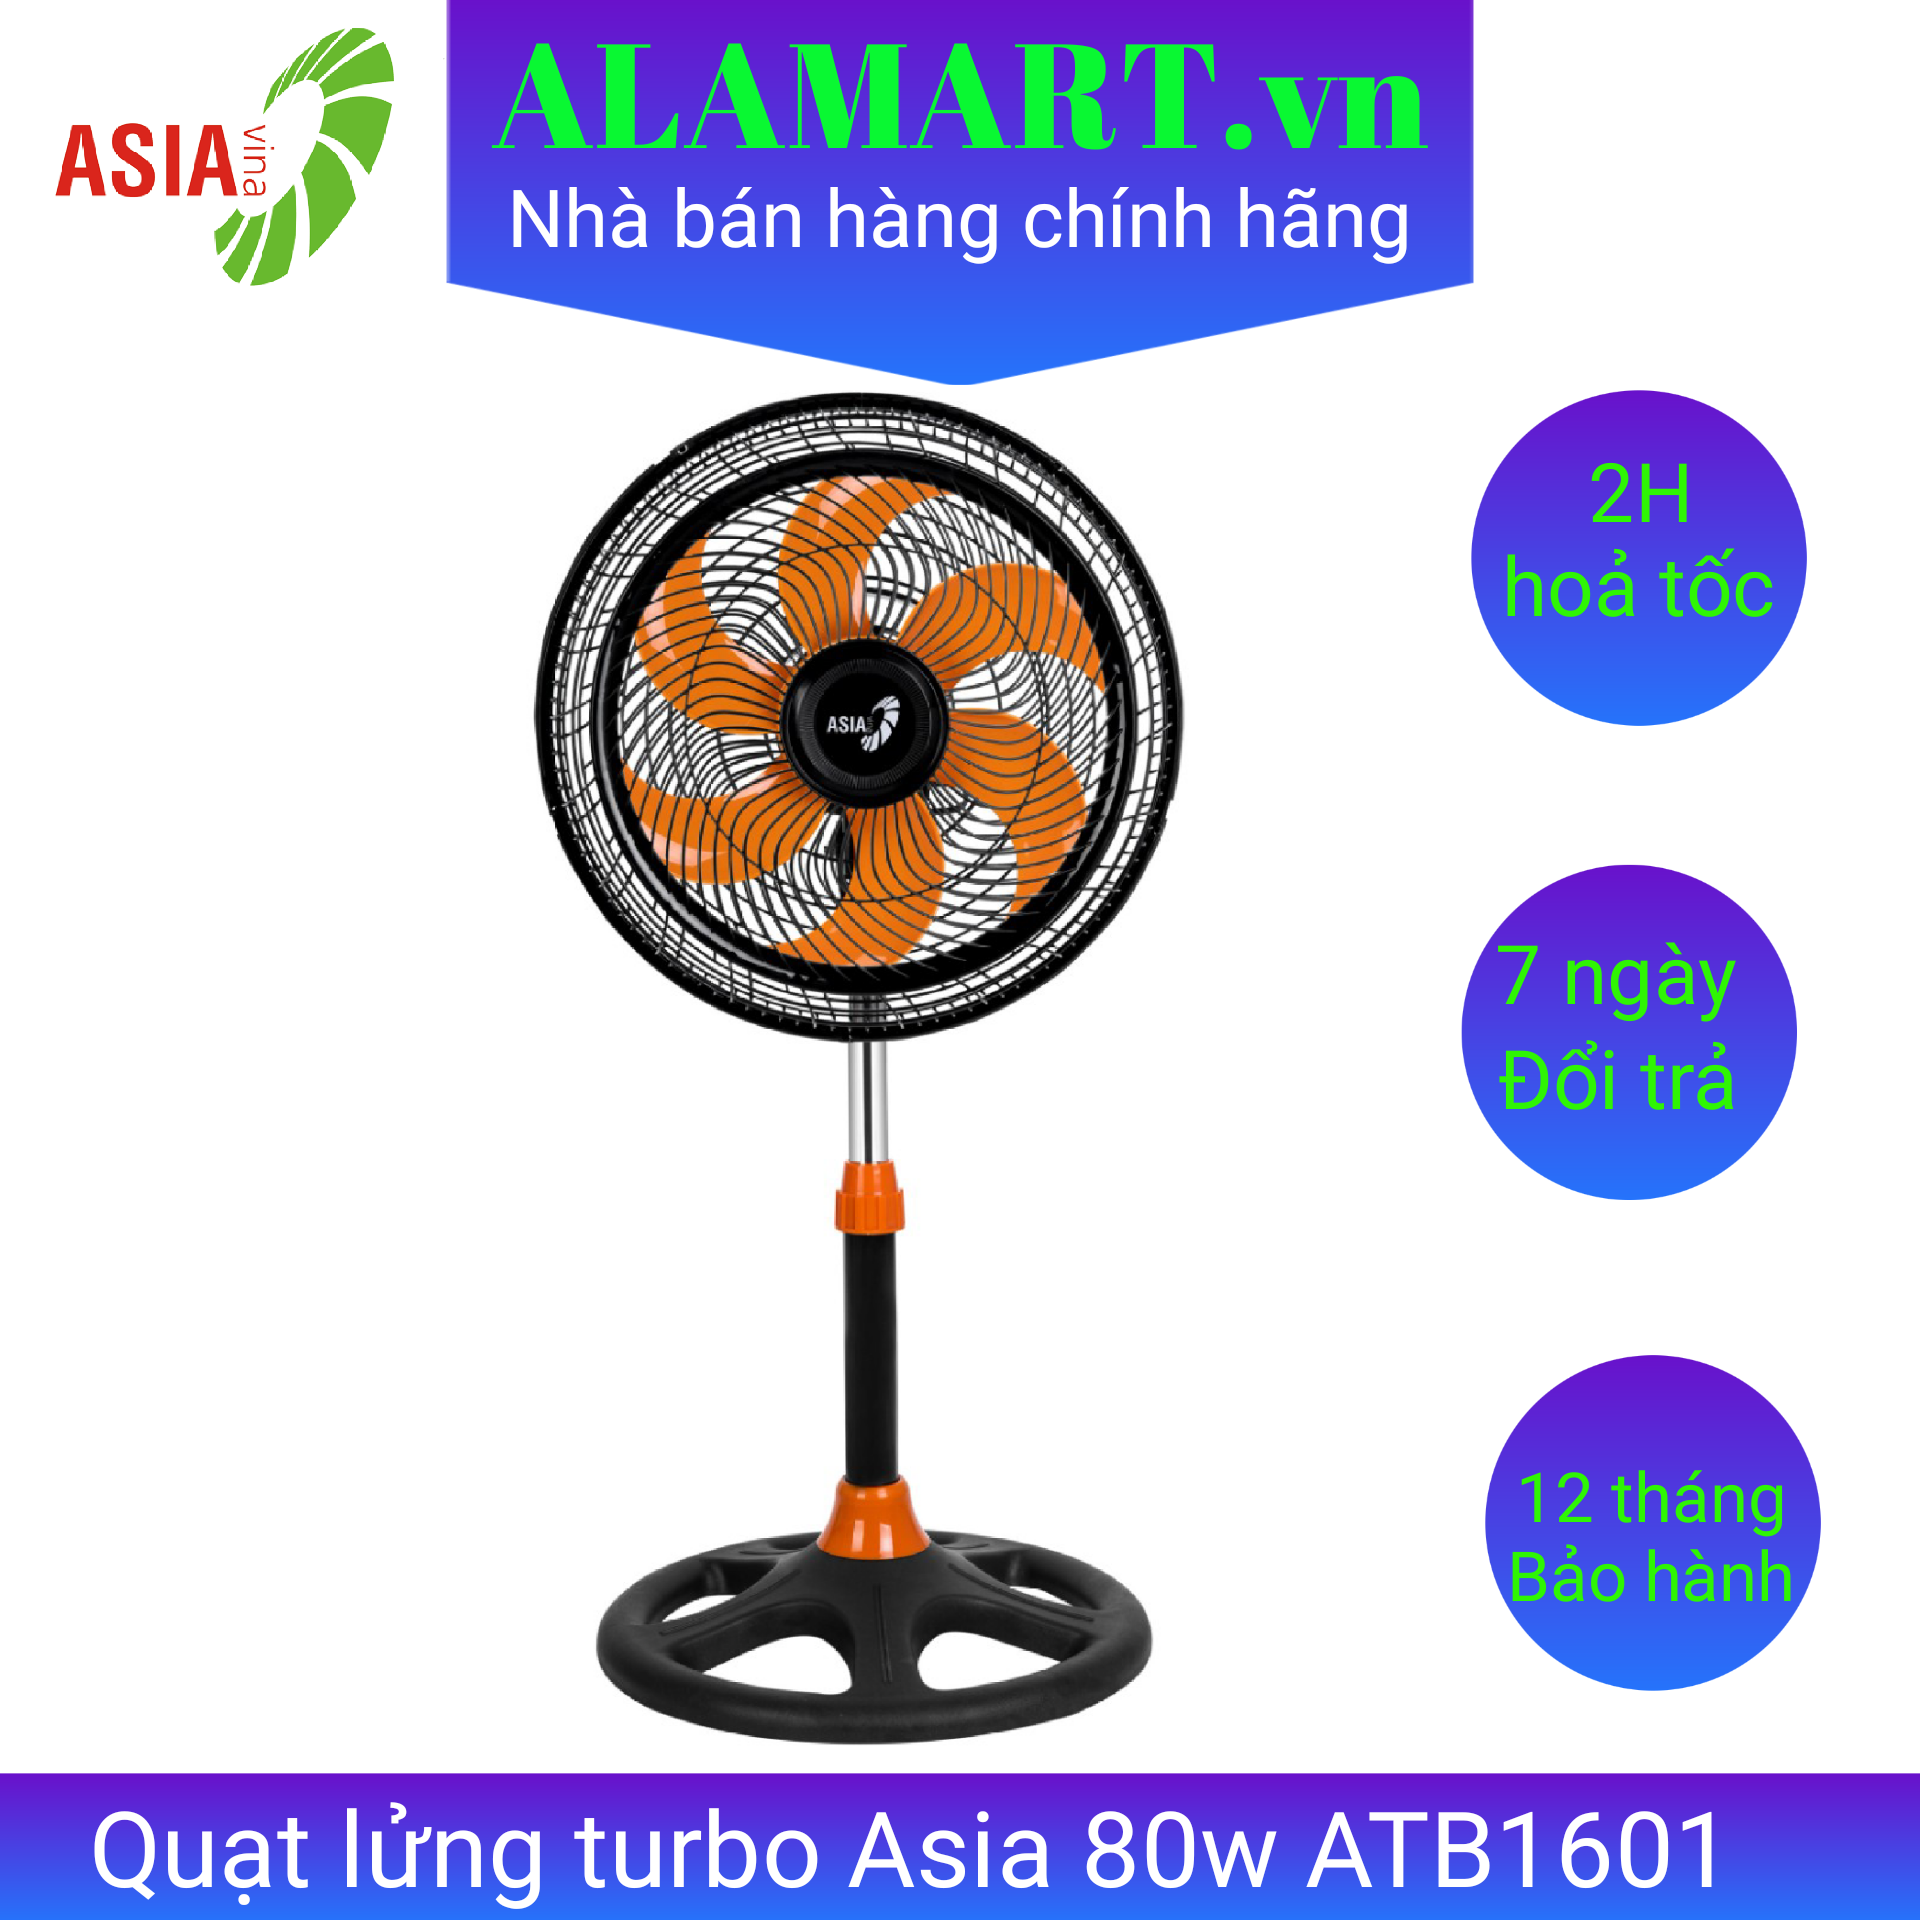 Quạt lửng turbo Asia ATB1601